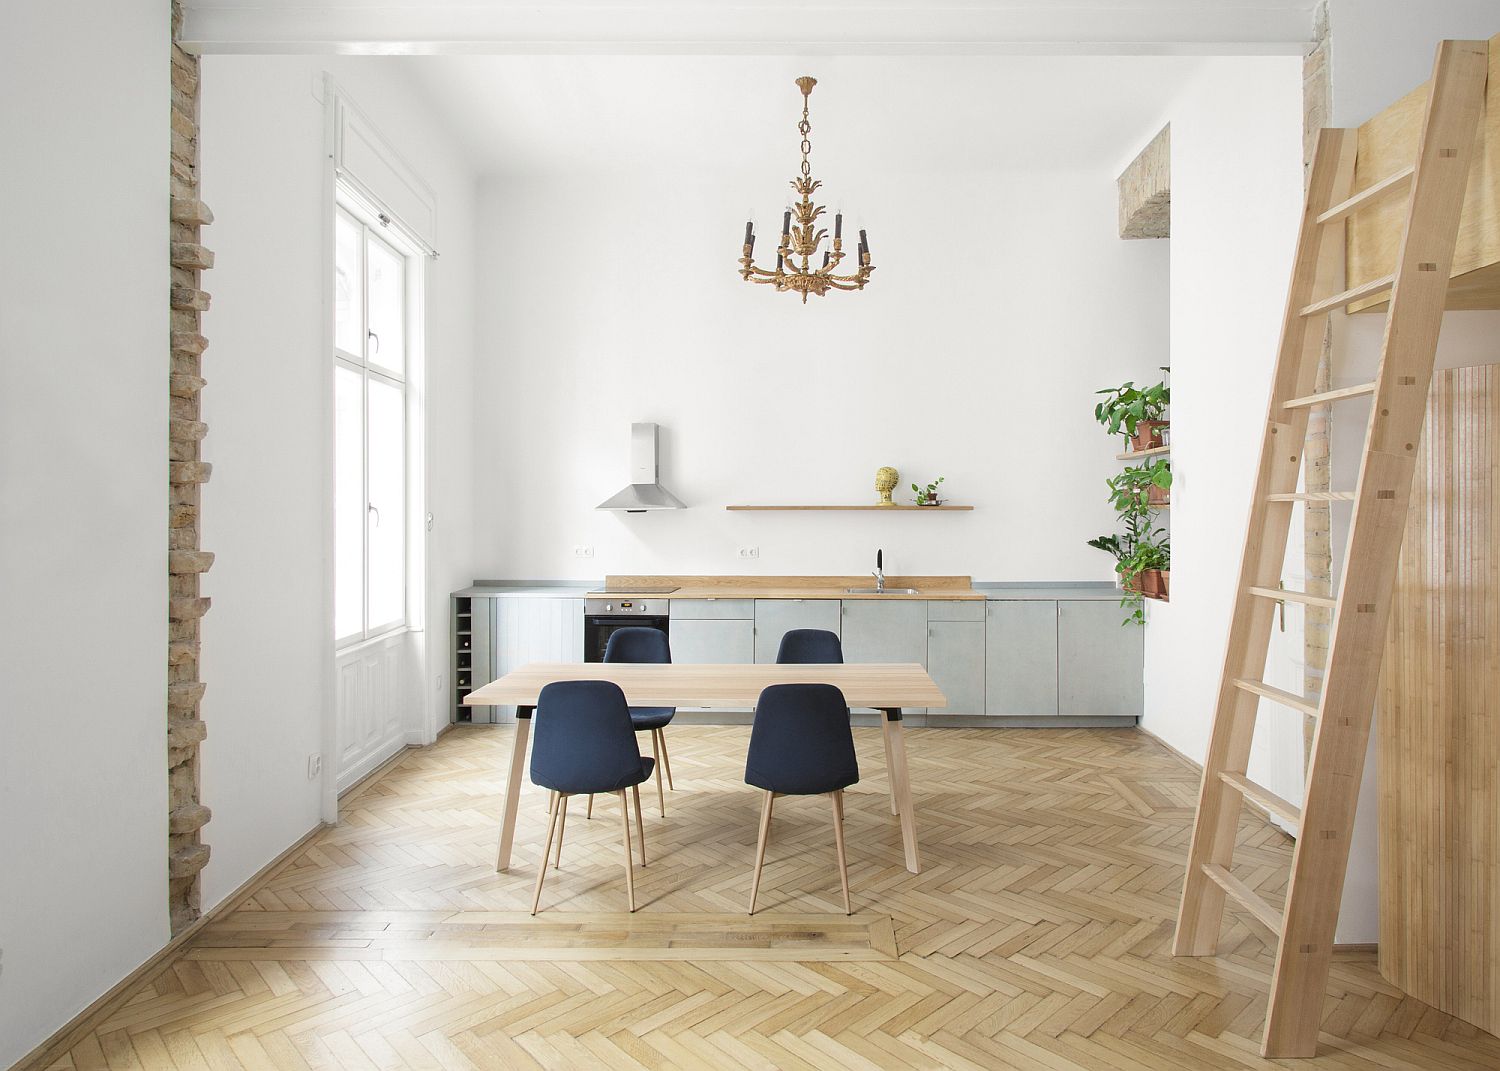 Sắc trắng và nội thất gỗ kết hợp hoàn hảo trong căn hộ có gác lửng